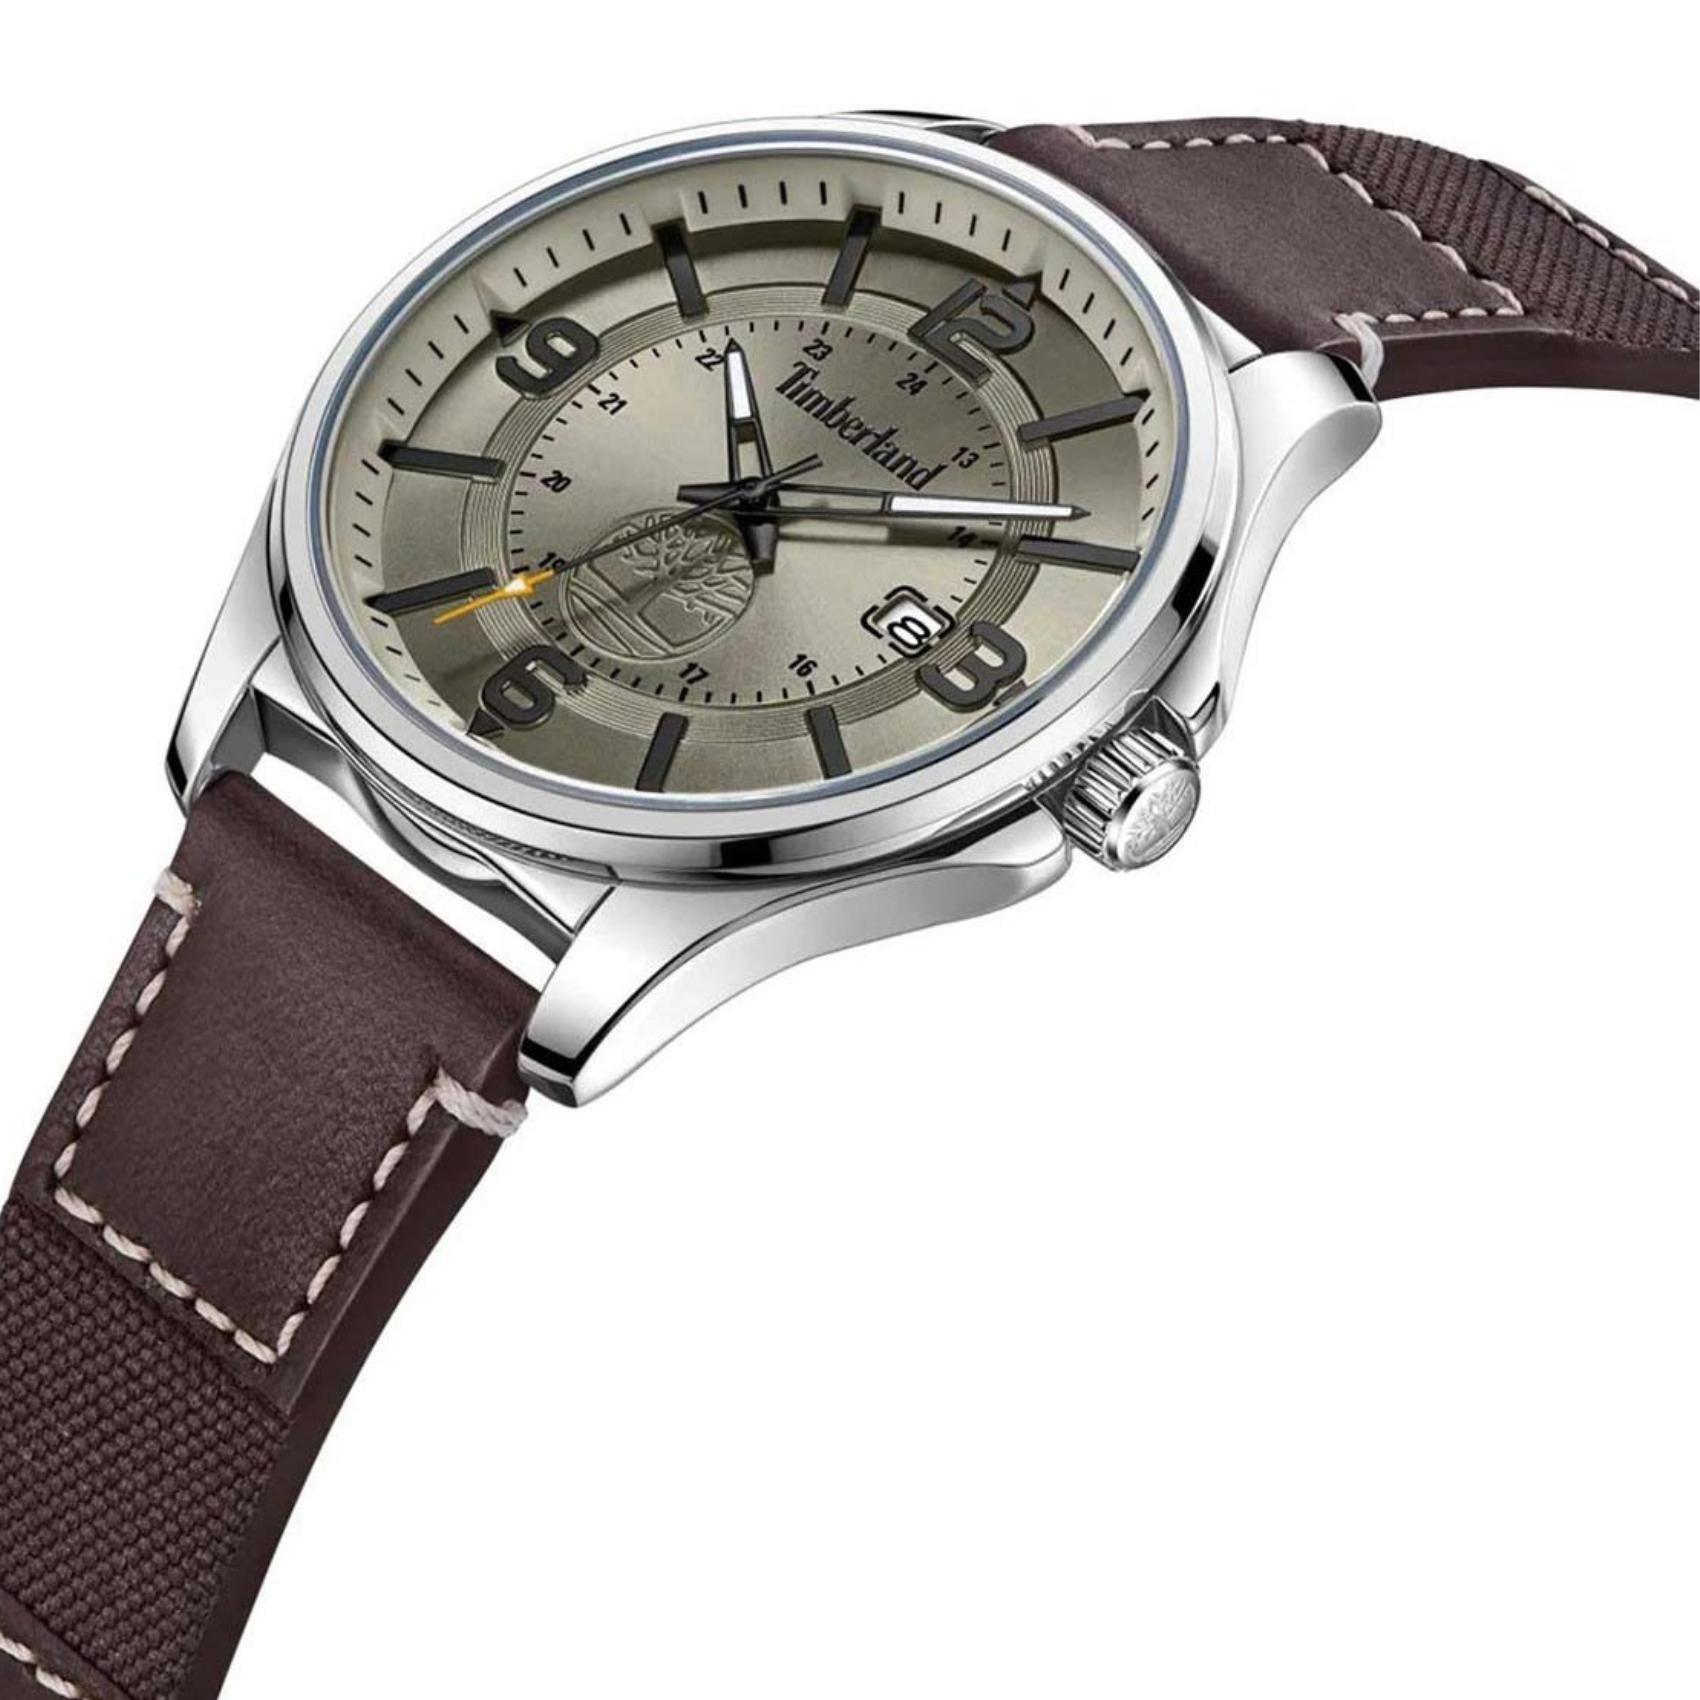 Αντρικό ρολόι Timberland Tyngsborough TDWGB2183002 με καφέ δερμάτινο λουράκι και γκρι καντράν διαμέτρου 45mm.